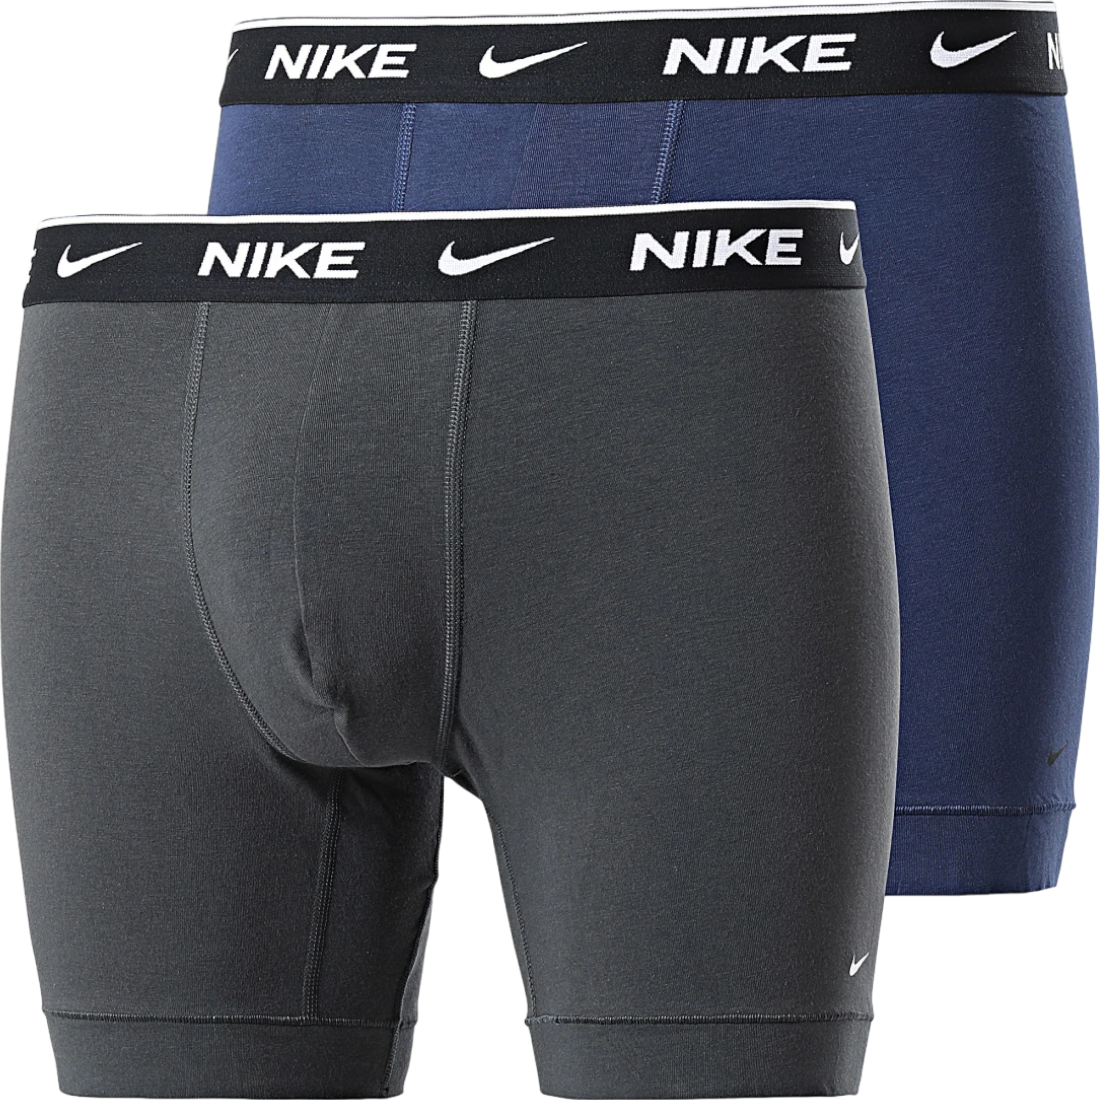 Boxer shorts Nike Sportswear 2 pcs